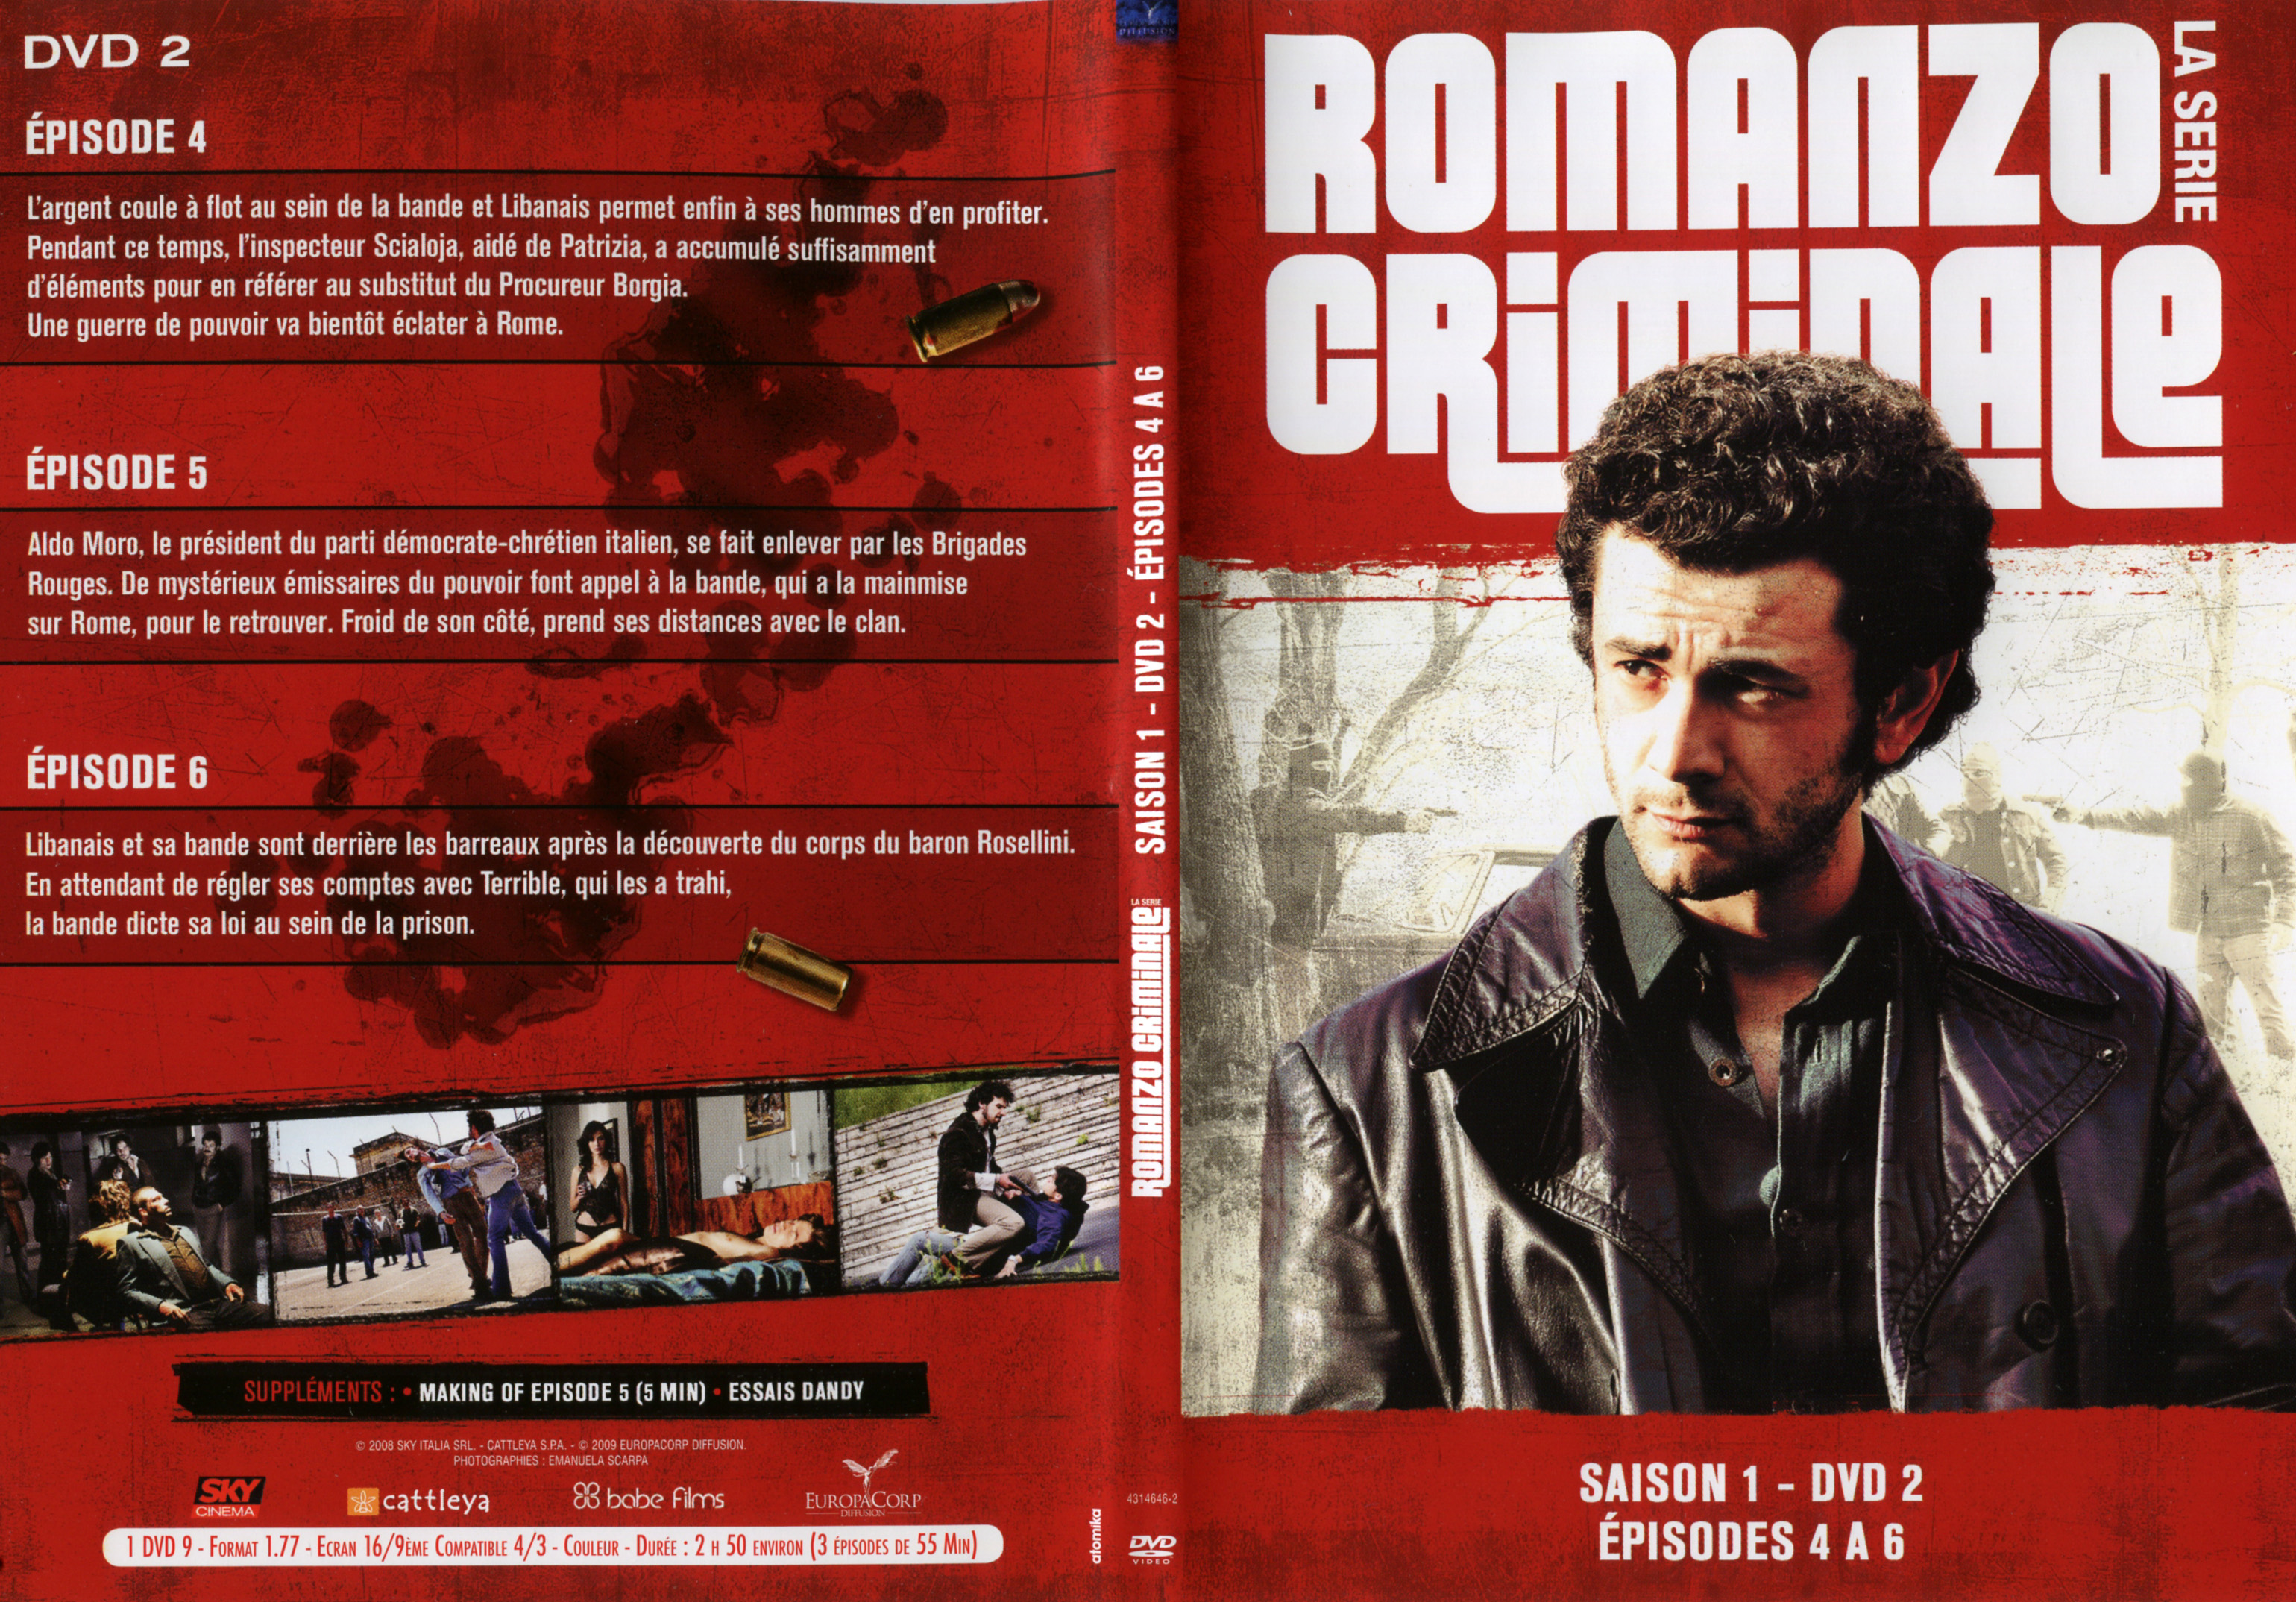 Jaquette DVD Romanzo criminale Saison 1 DVD 2